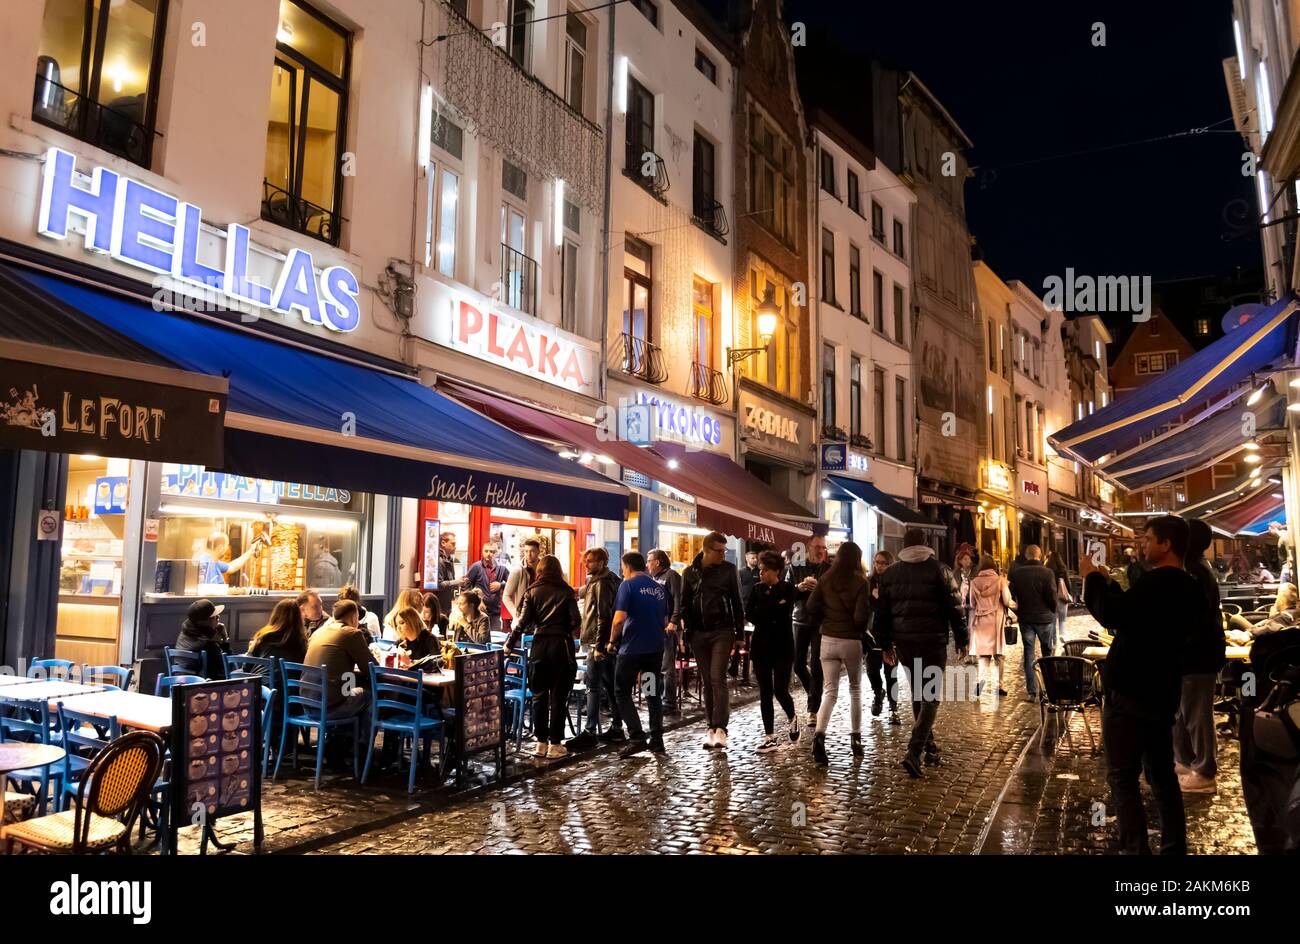 Griechische cafes säumen die Straße, in der historischen Altstadt von Brüssel Belgien an einem regnerischen bis spät in die Nacht in der geschäftige, überfüllte Stadt. Stockfoto